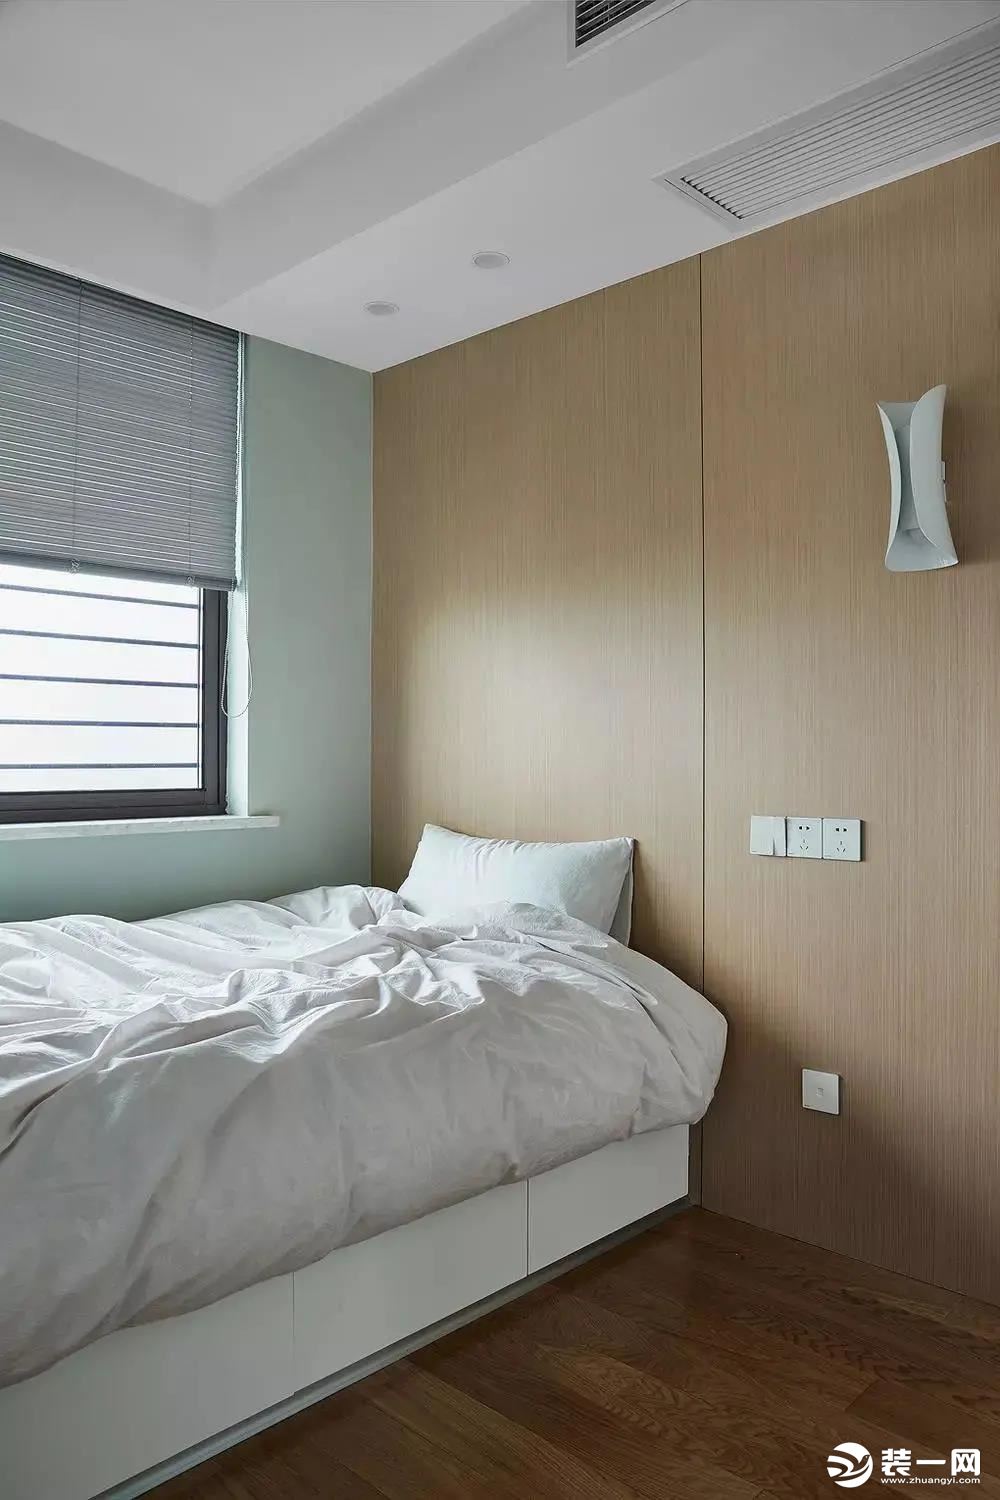 次卧2为整洁优雅的生活提供保障，再加上颜值超高的绿色墙纸使得整个房屋格调瞬间提升